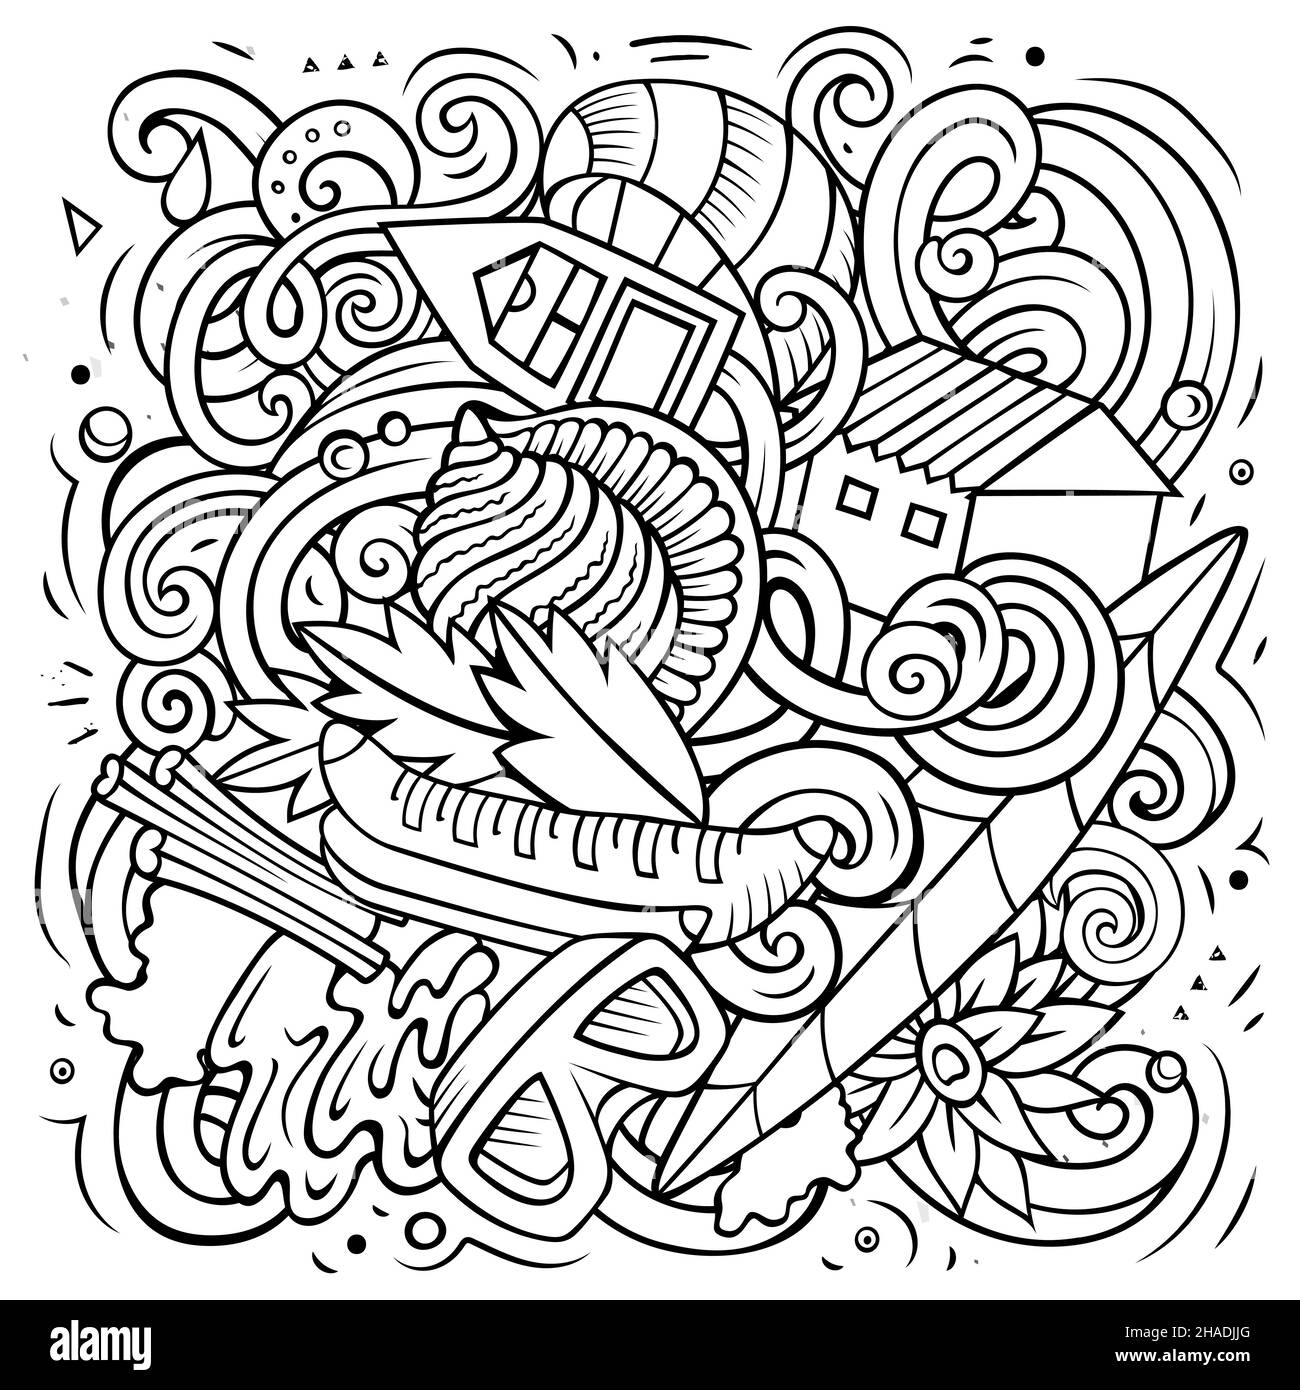 Seychellen Cartoon Vektor Doodle Illustration. Skizzenhafte detailreiche Komposition mit vielen exotischen Insel-Objekten und Symbolen. Stock Vektor